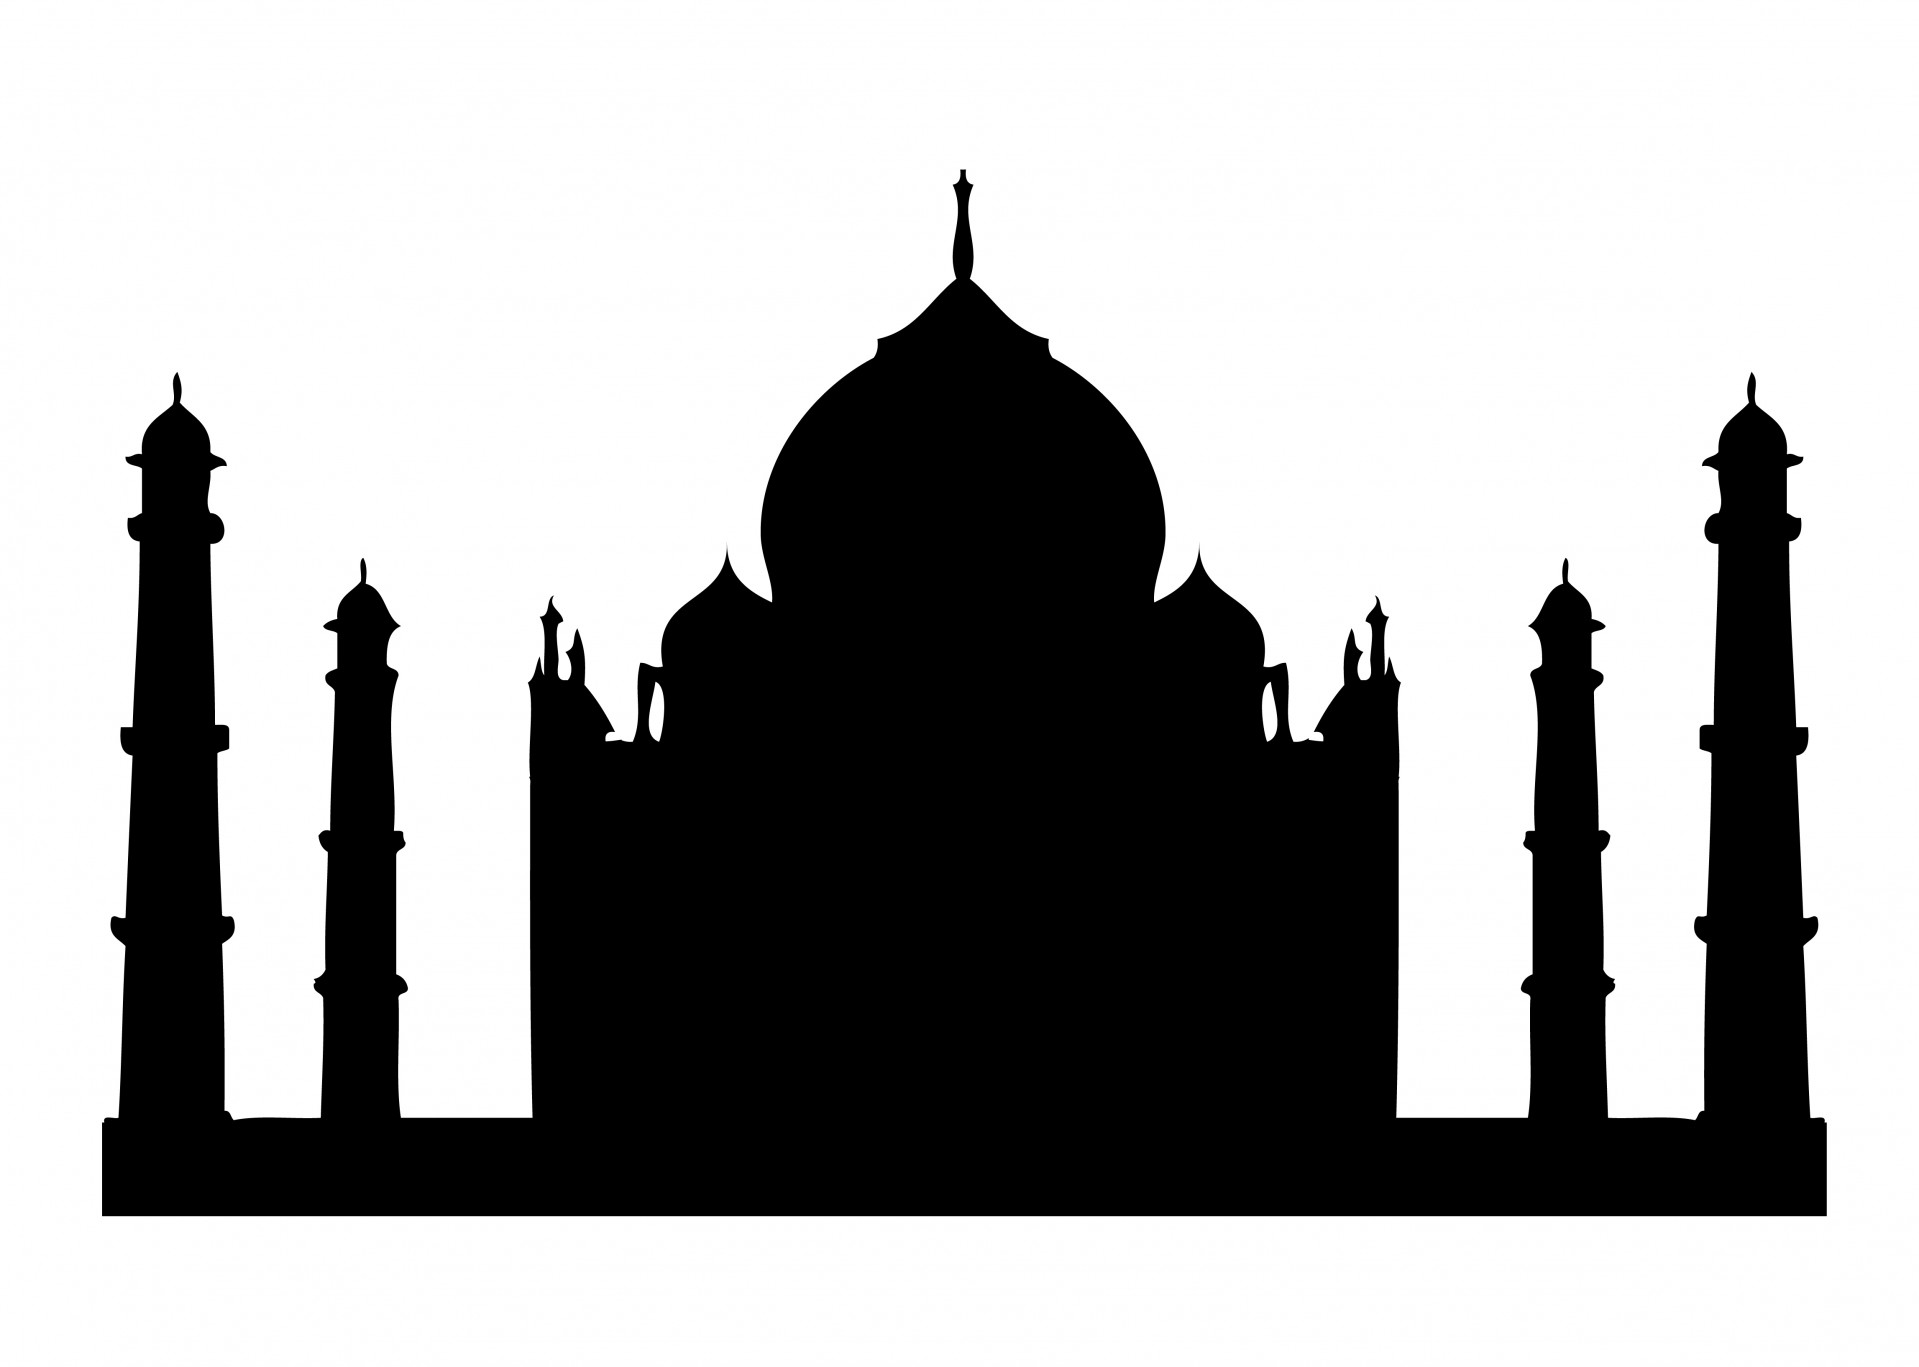 ... Front View of Taj Mahal -